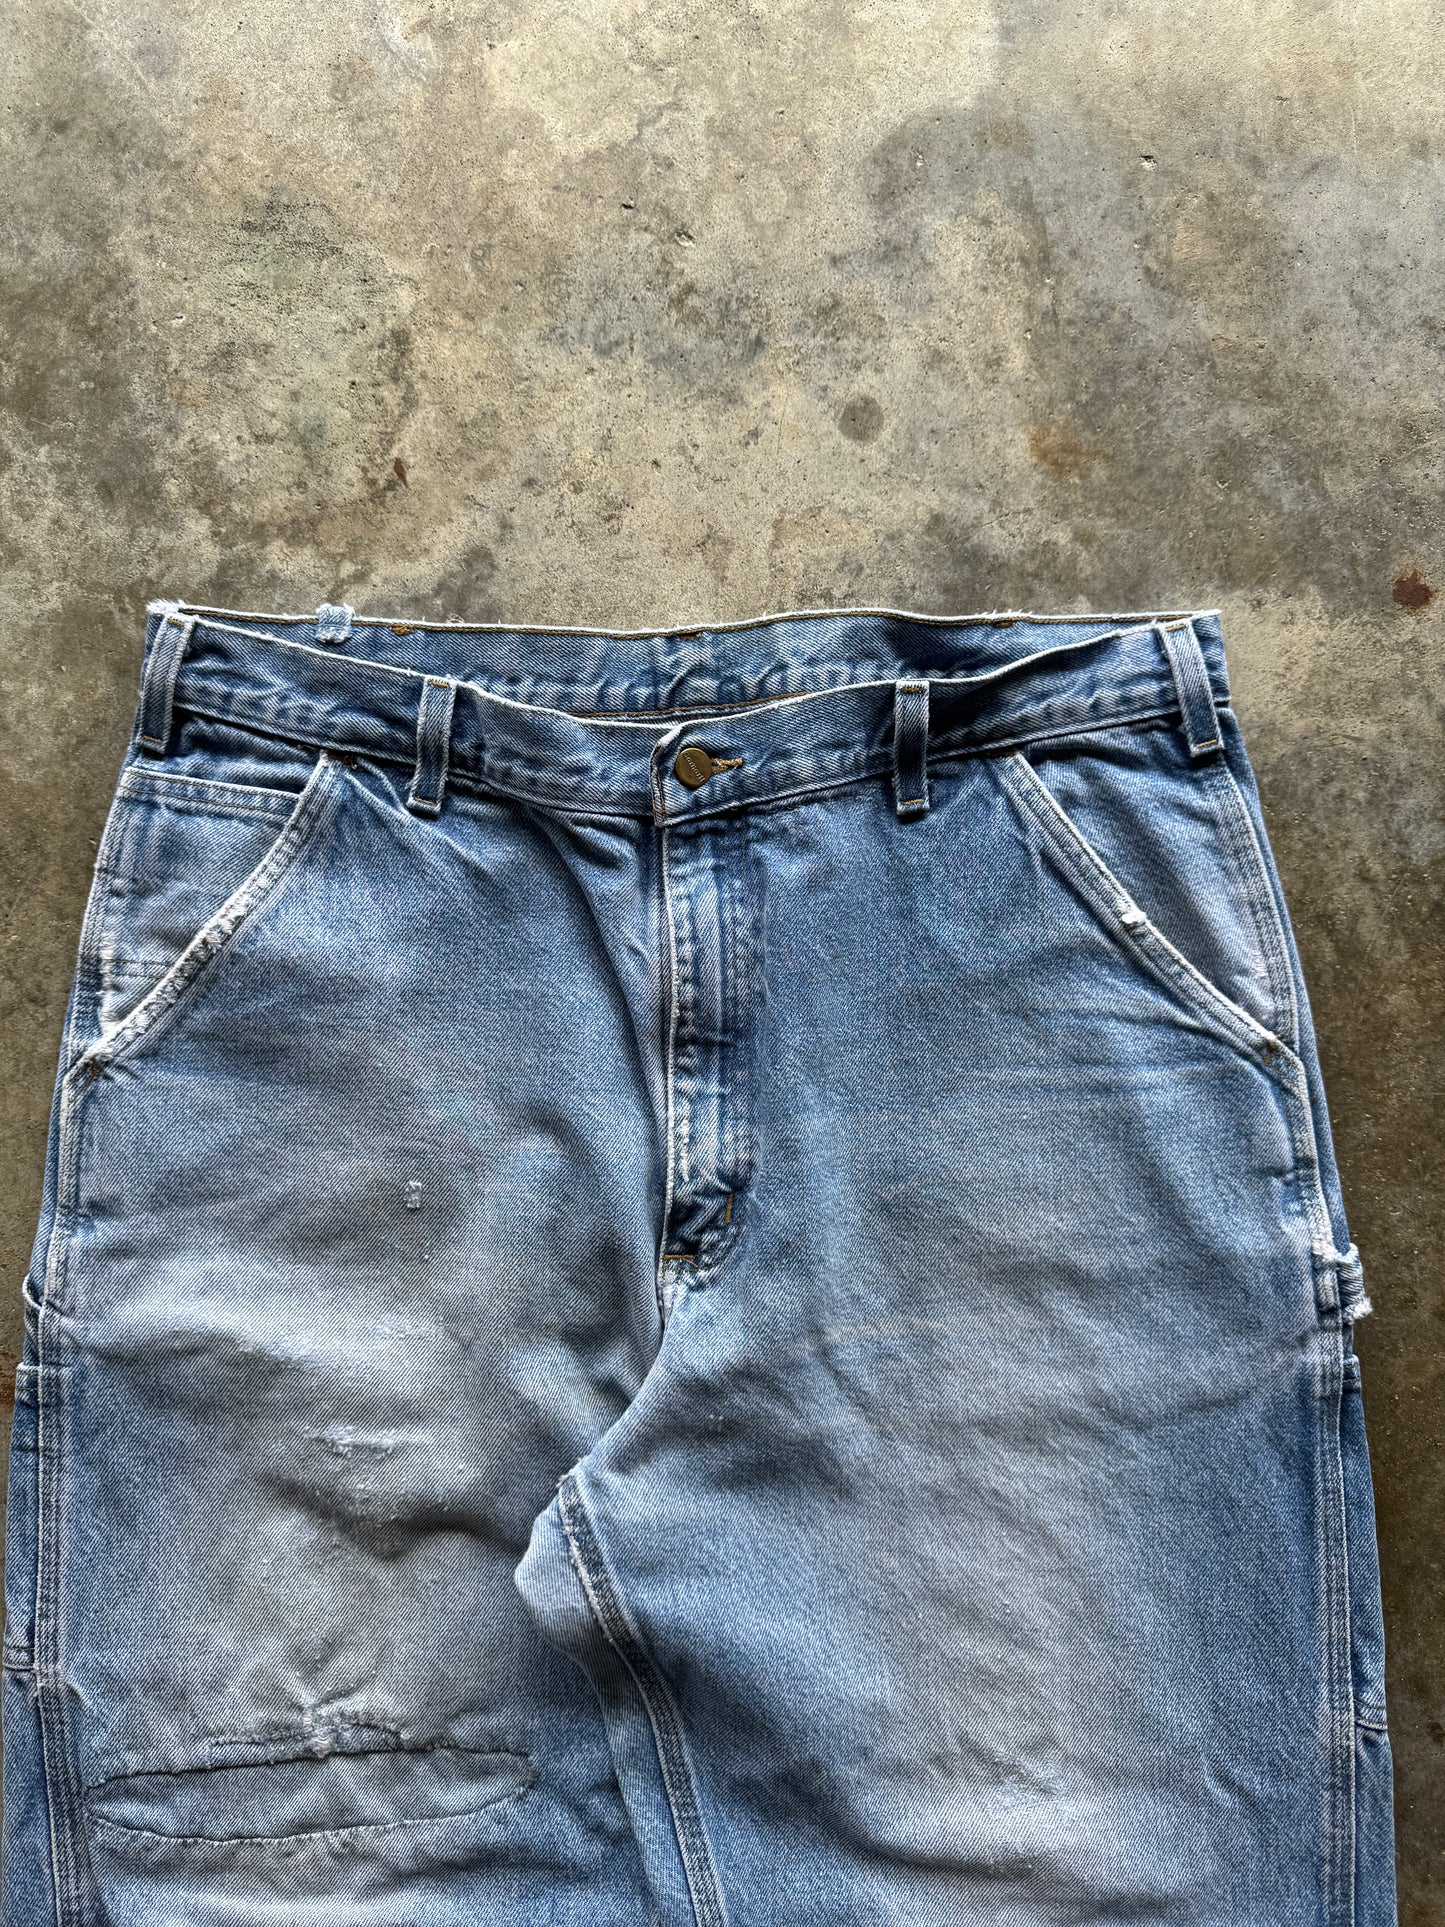 (36 x 36) Carhartt Faded Denim Jeans